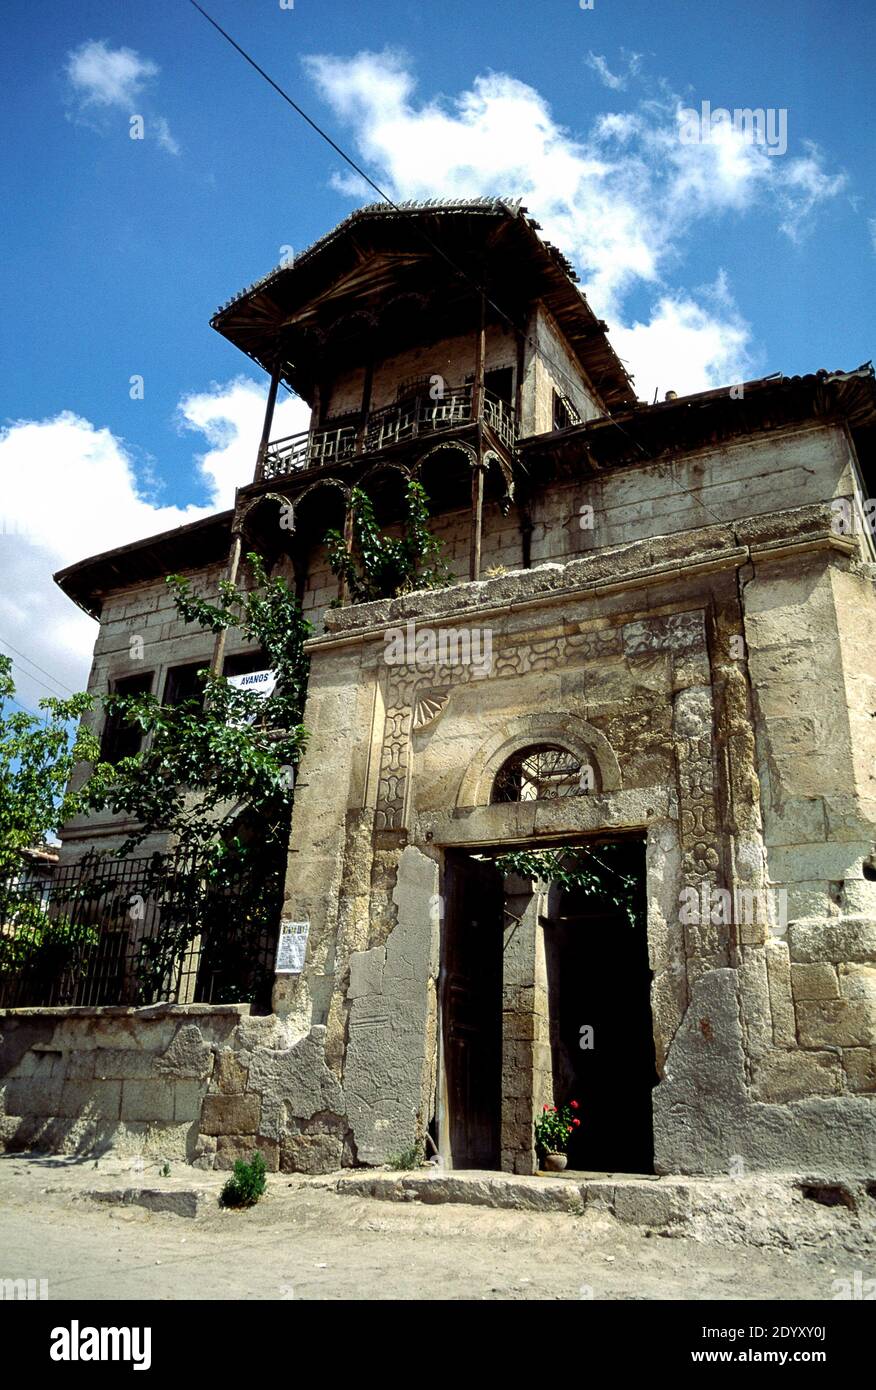 Avanos, Anatolie, Cappadoce, Turquie: Ancienne maison de l'époque ottomane Banque D'Images